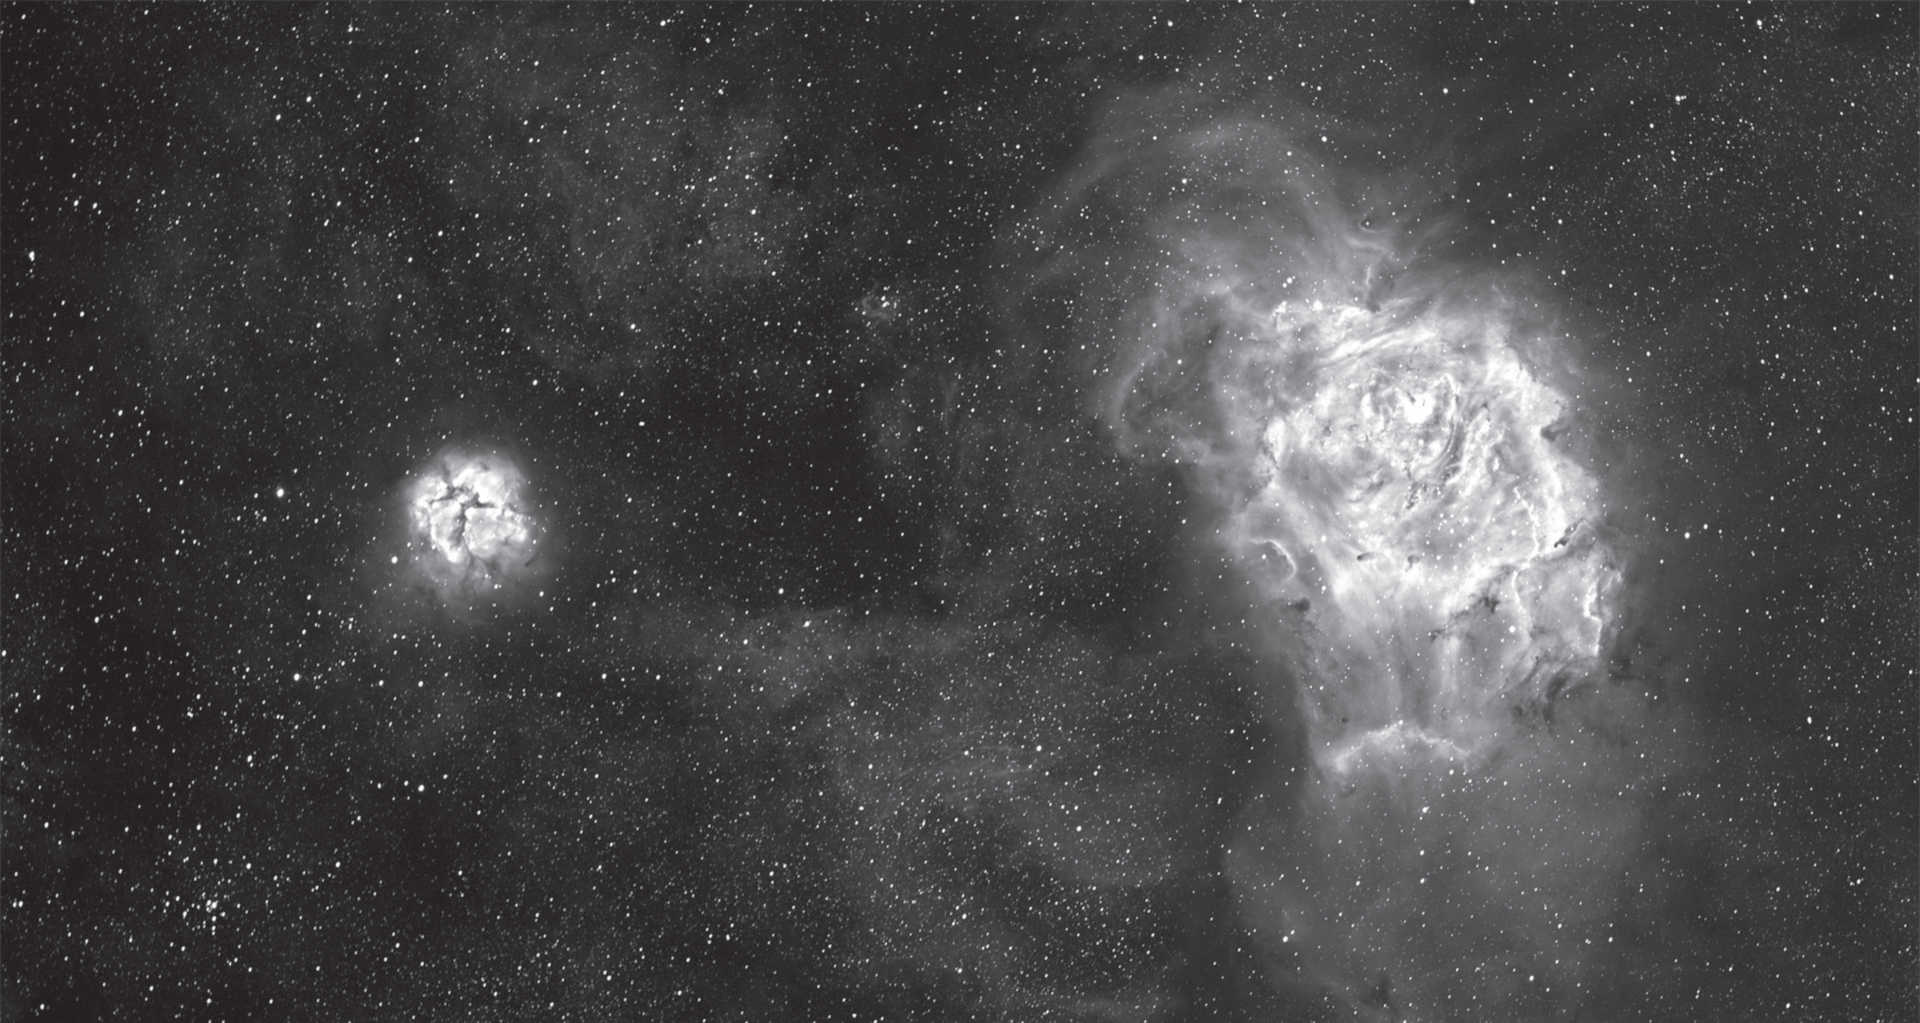 La nebulosa Laguna e Trifida (M8 e M20) nella costellazione del Sagittario. Immagine ottenuta dalla somma di sei scatti con tempo di esposizione di 1 minuto ciascuno, sei scatti da 15 minuti ciascuno e 2 scatti da 60 minuti ciascuno. Camera: SBIG STF-8300, filtro Hα con banda passate di 35 nm, telescopio: rifrattore 130 mm con lunghezza focale di 1000 mm. U. Dittler